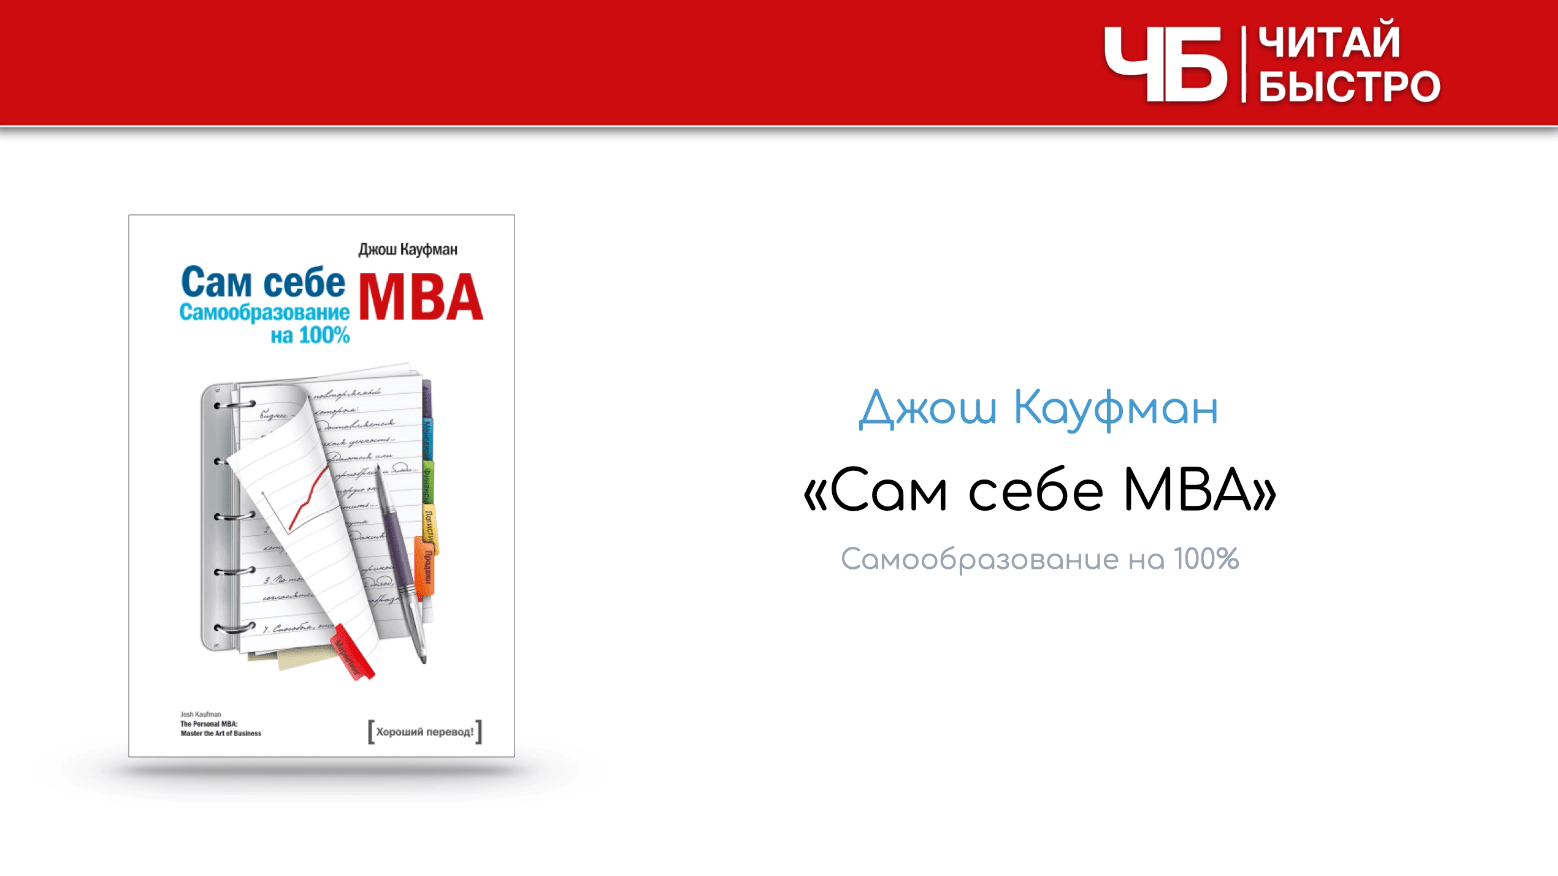  Заглавный слайд краткого содержания книги Джоша Кауфмана «Сам себе MBA».